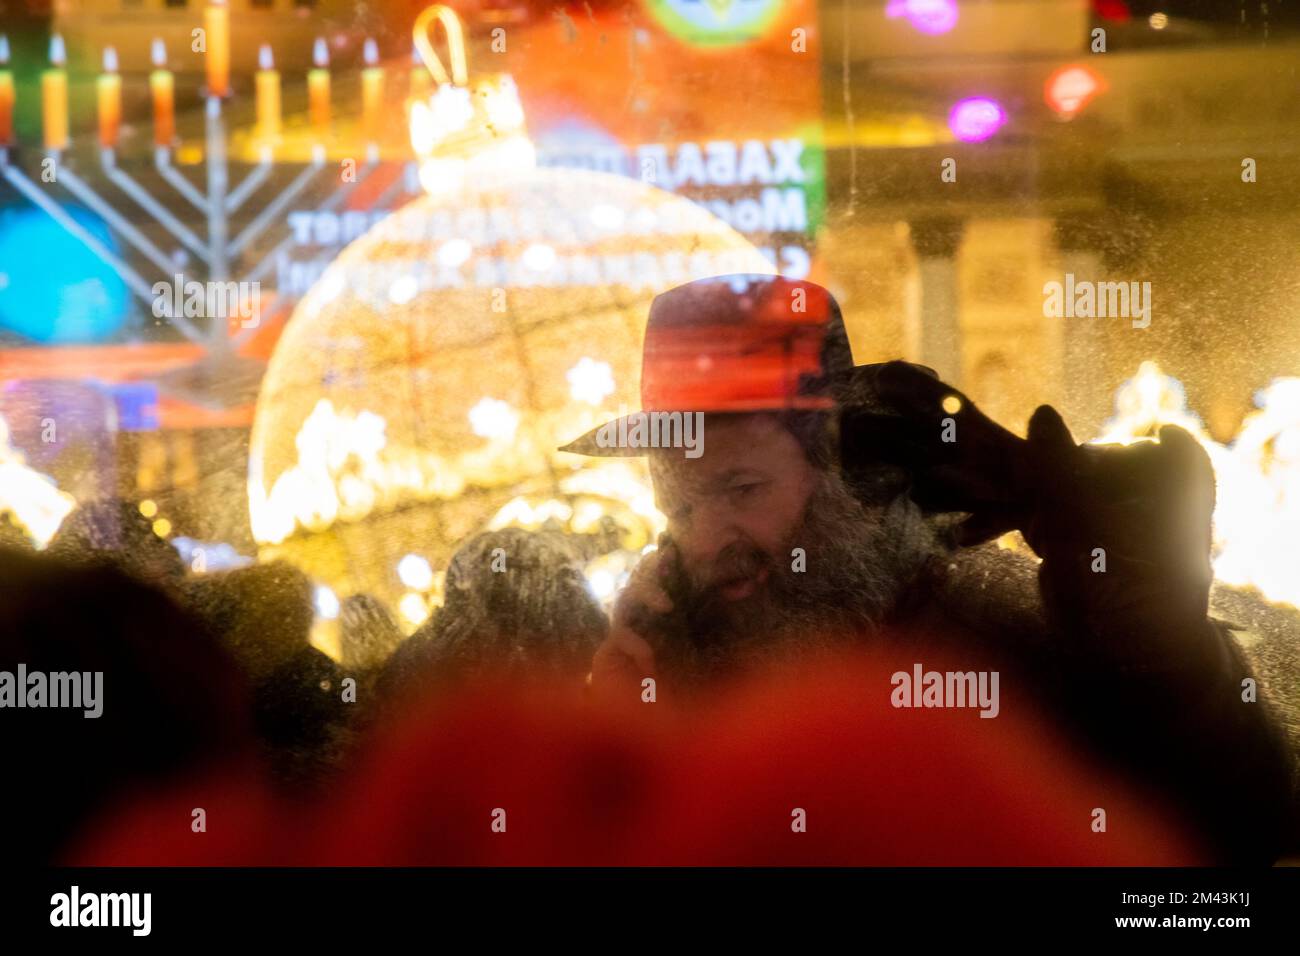 Moskau, Russland. 18.. Dezember 2022. Menschen nehmen an einer Veranstaltung zur Feier von Hanukkah auf dem Platz der Revolution in Moskau, Russland, Teil. Hanukkah ist ein jüdisches Festival, das der Wiedererlangung Jerusalems im 2.. Jahrhundert v. Chr. gedenkt. Dieses Jahr wird der 18-26. Dezember gefeiert. Nikolay Vinokurov/Alamy Live News Stockfoto